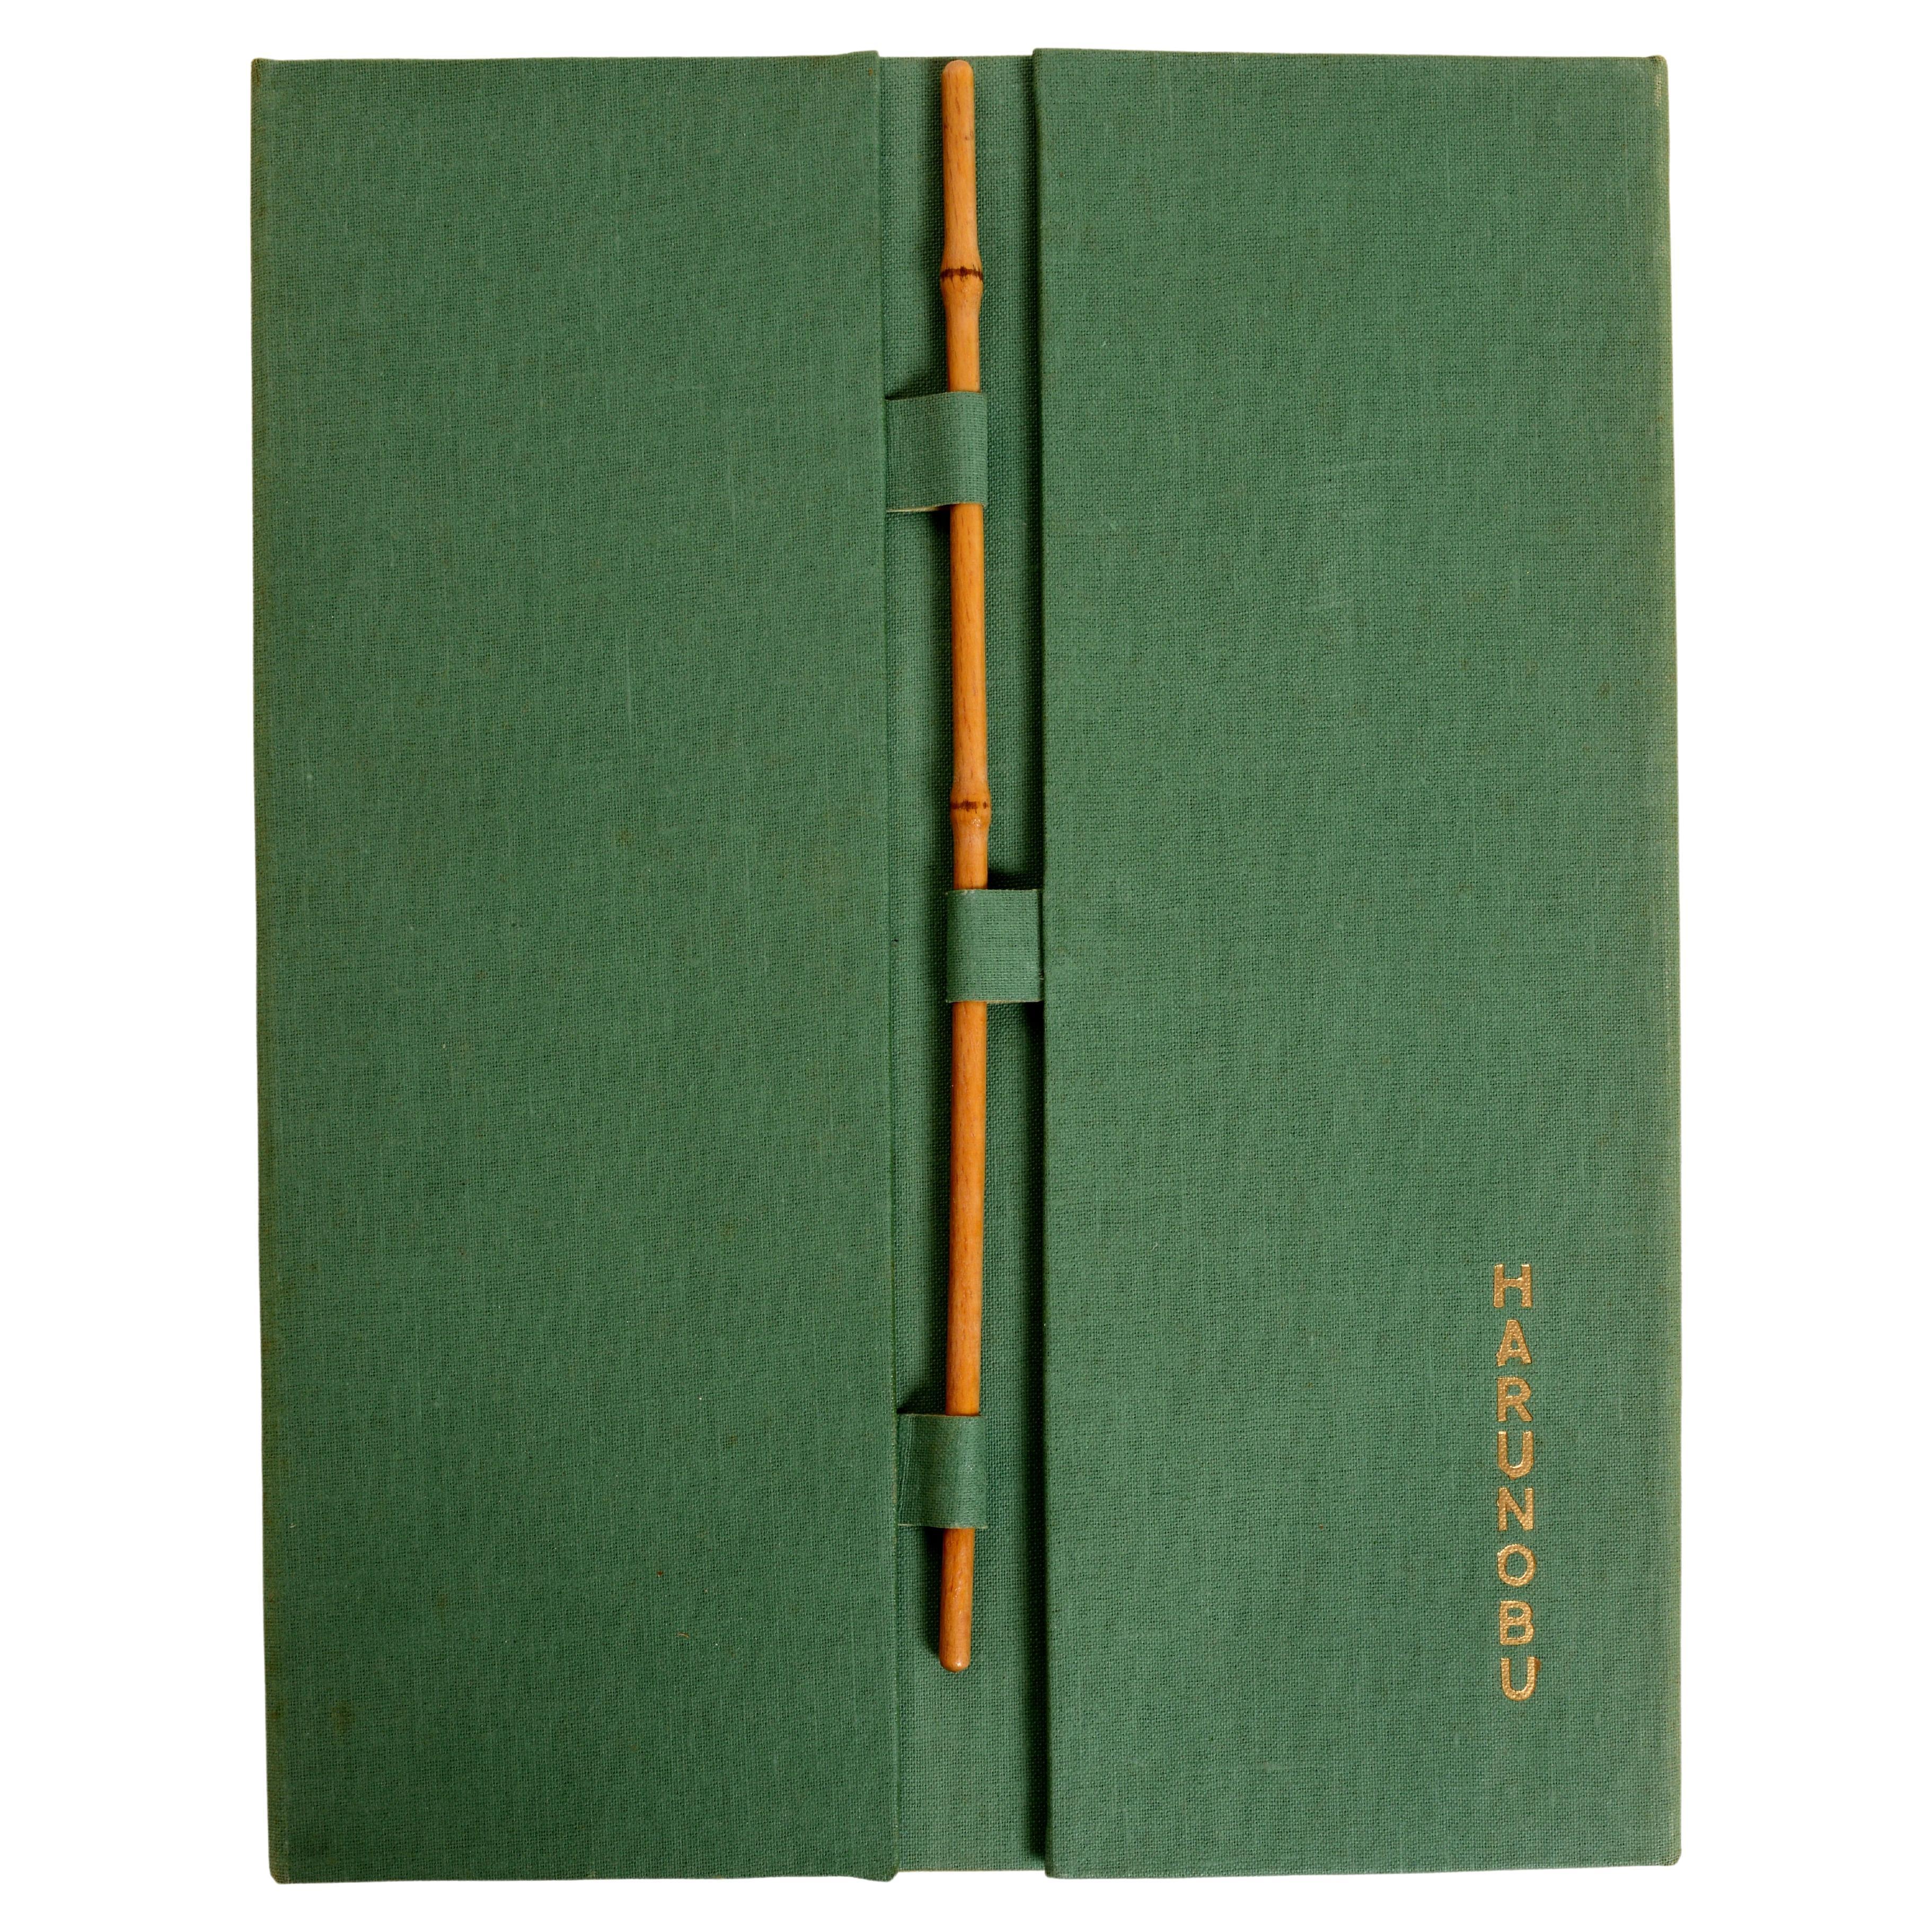 Harunobu, von Lubor Hajek, und übersetzt von Hedda Vessela Stranska. 1. Auflage: Spring Books, London, 1958. Softcover mit Seidenbindung, illustrierter Softcover-Einband auf grünem Leineneinband. Die Bretter werden mit einem Bambusstab befestigt.